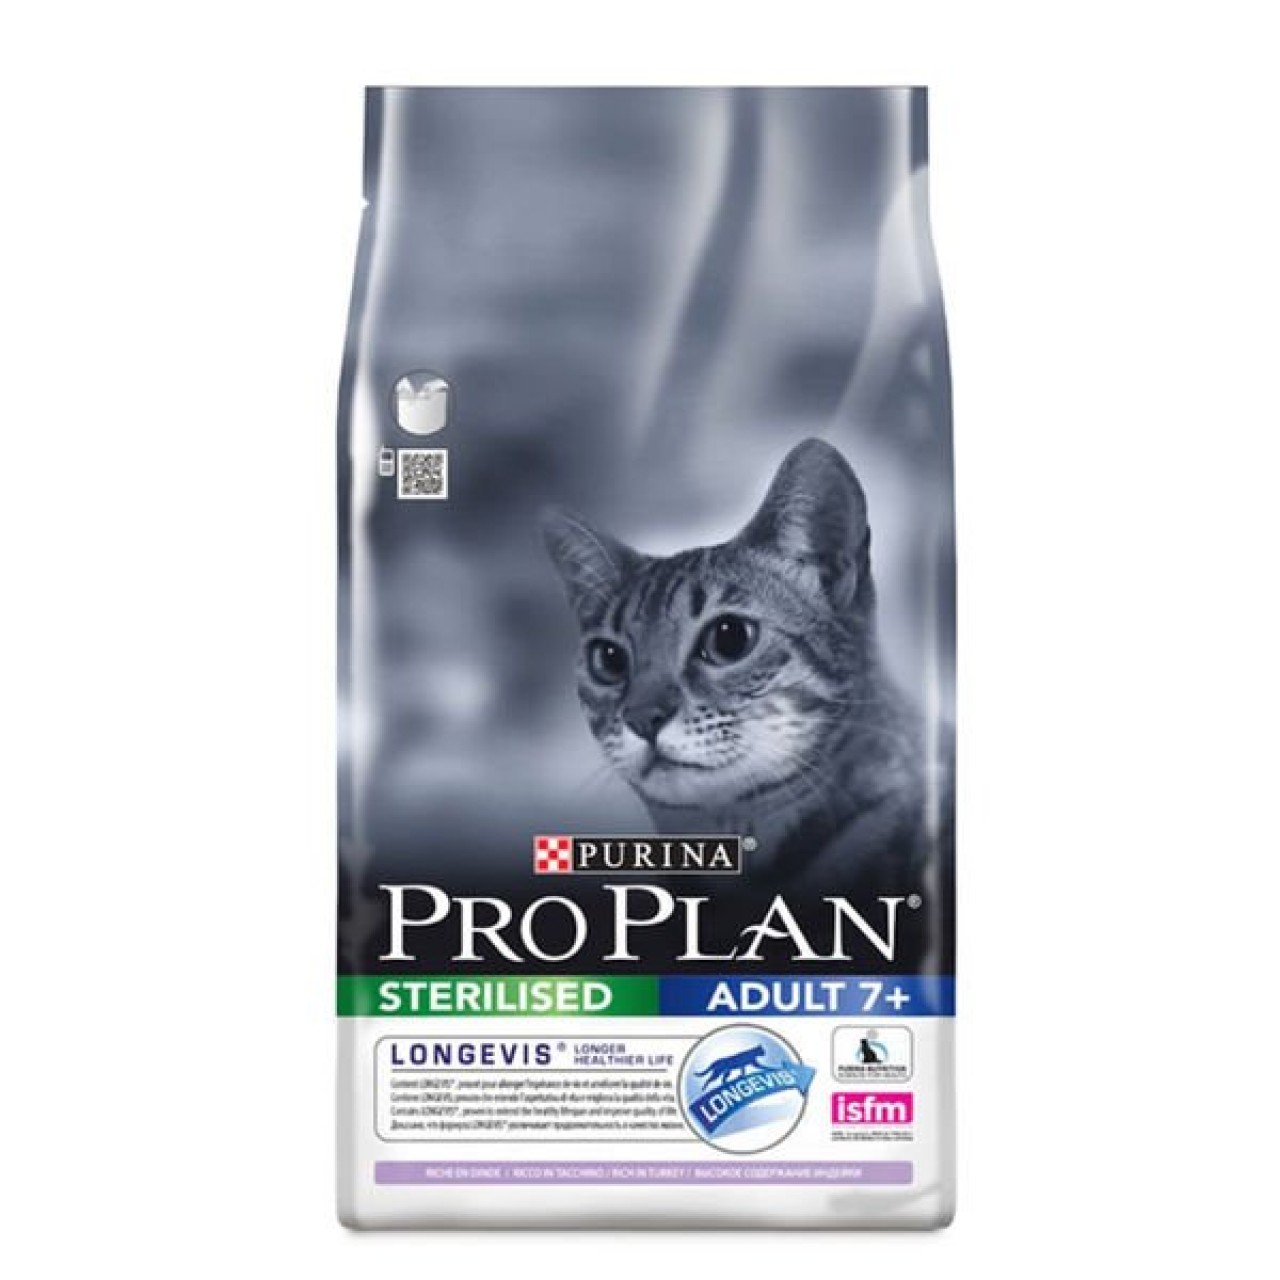 Pro plan для кошек стерилизованных 10. Purina Pro Plan для кошек Sterilised 1.5 индейка. Пурина Проплан для кошек с чувствительным пищеварением сухой. Проплан для кошек сухой Деликат. Корм Проплан для кошек 10кг.